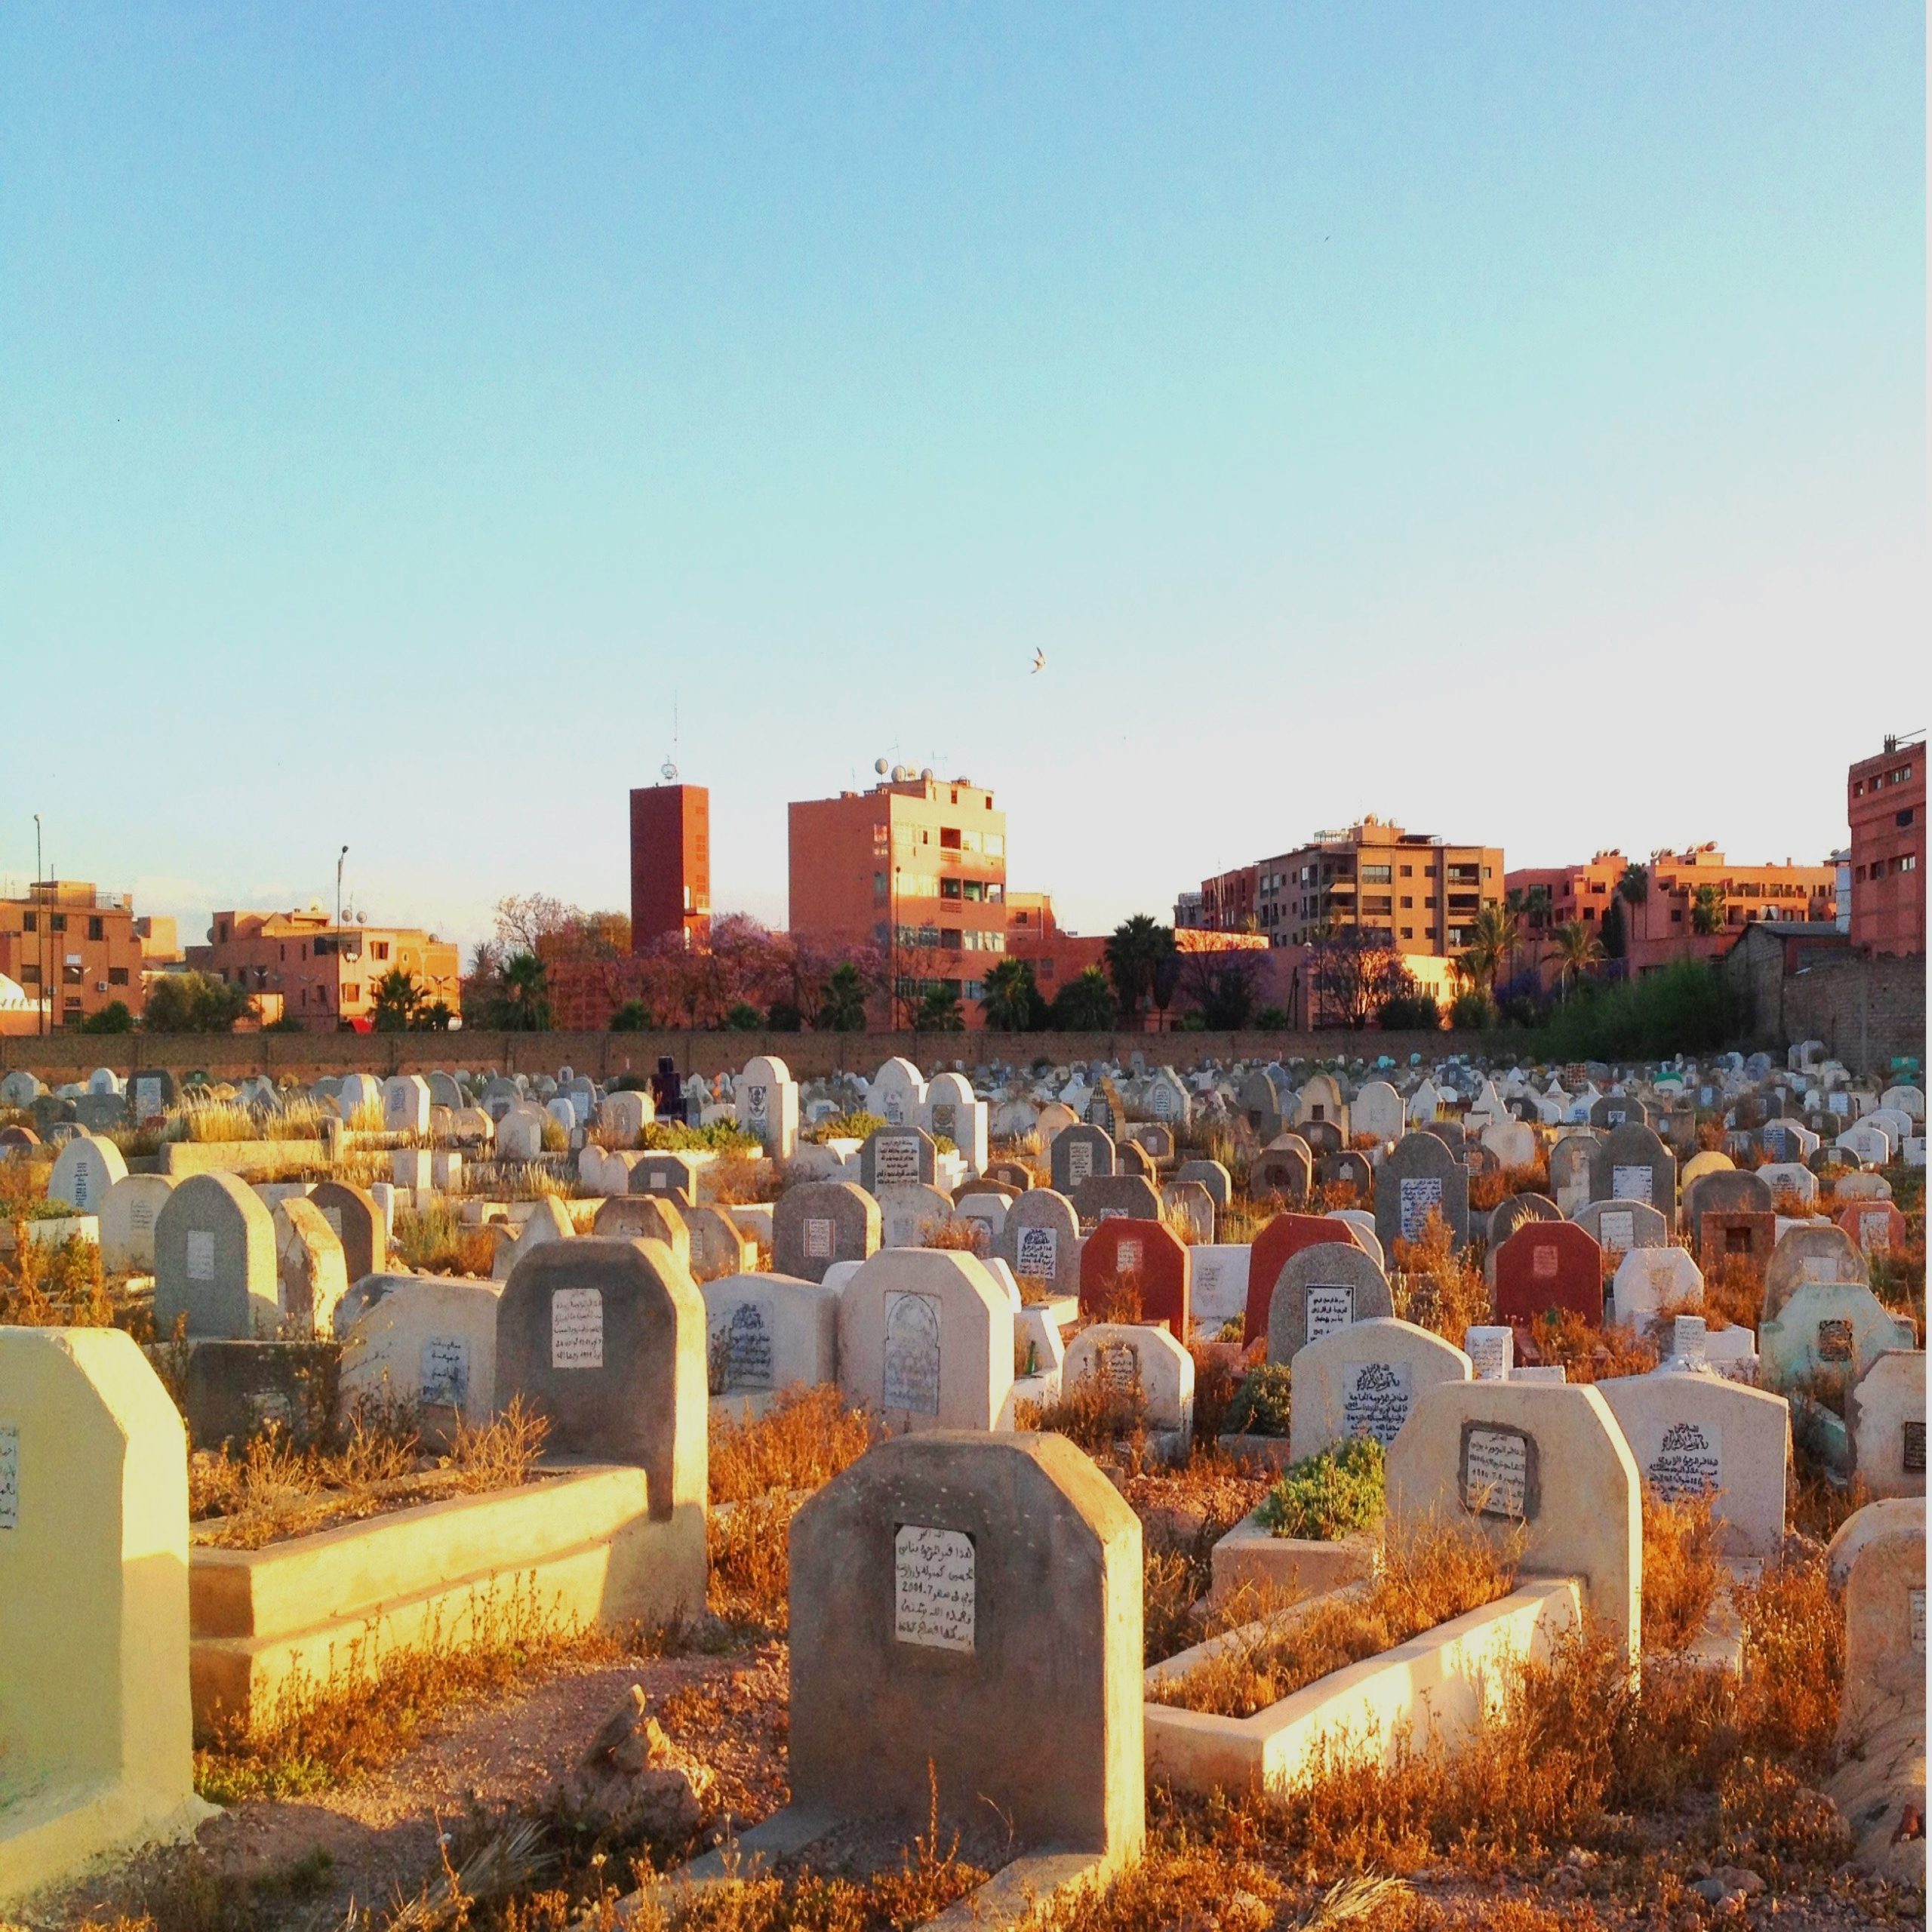 एमडी.बौलाम फोटोग्राफर ने सूर्यास्त के समय एक मुस्लिम कब्रिस्तान माराकेश को देखा - सपनों की व्याख्या